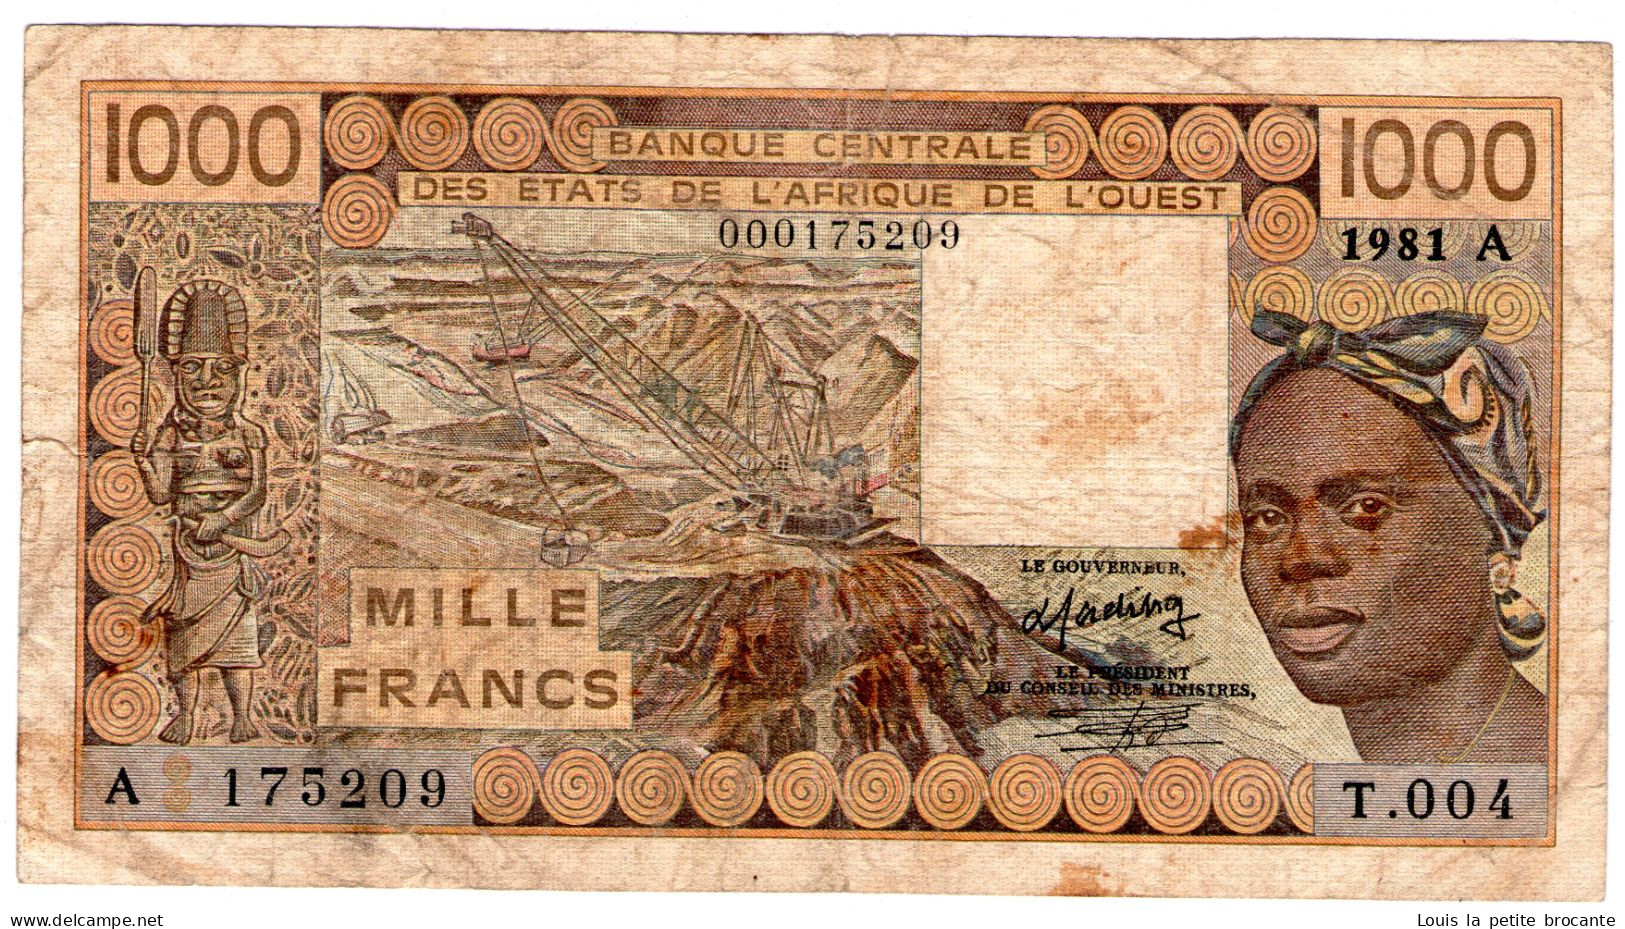 Billet De 1000 FRANCS COTE D'IVOIR 1981, Bon état - Costa De Marfil